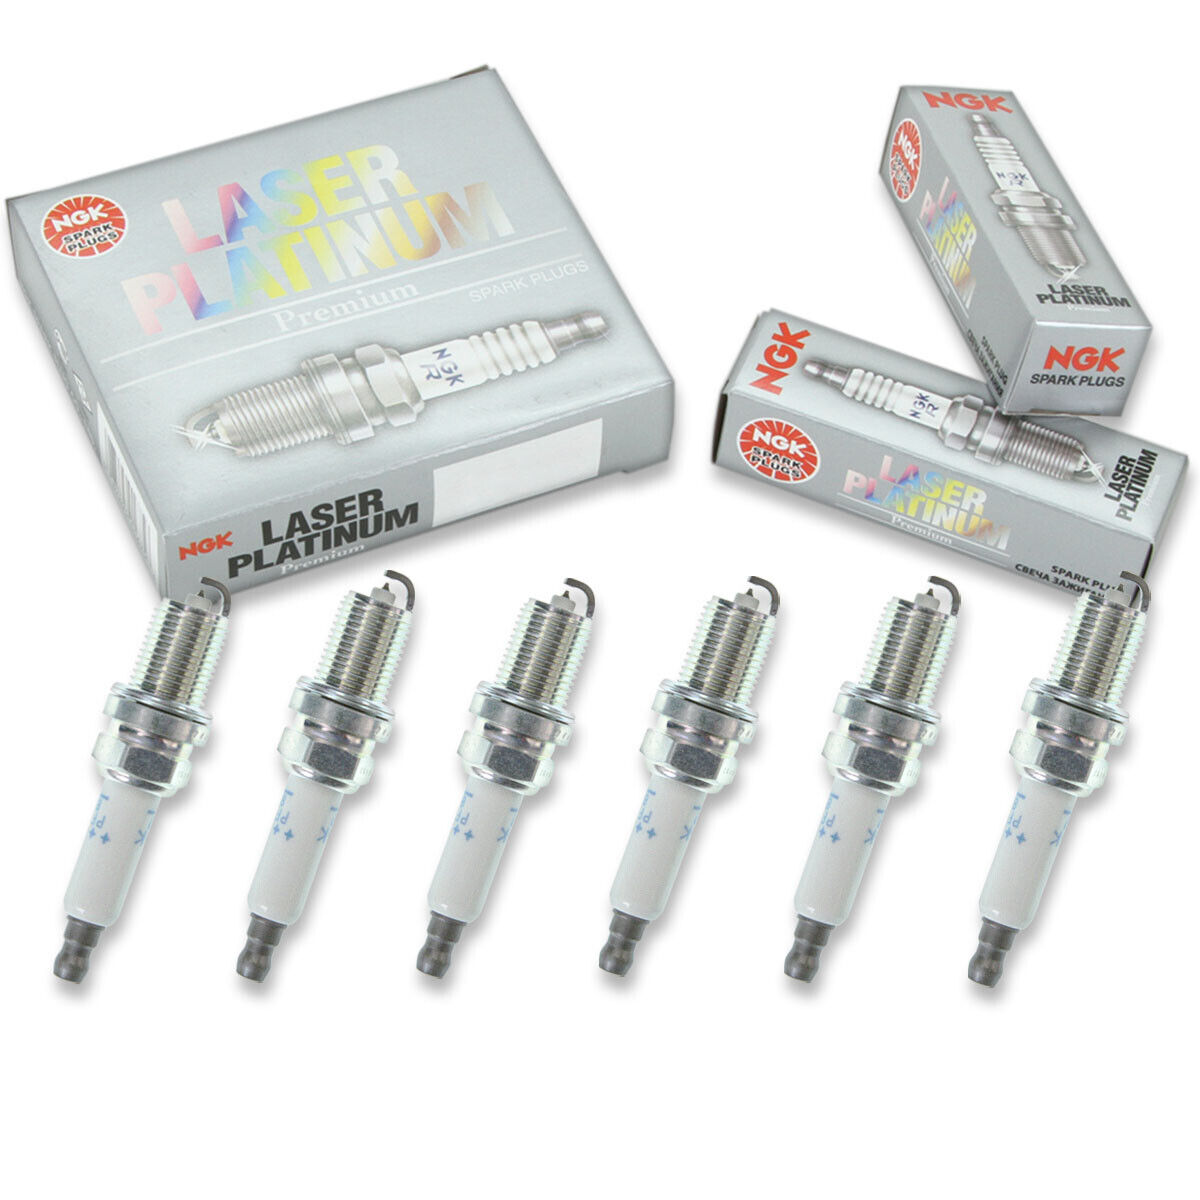 6 pc NGK 94460 PFR8S8EG Laser Platinum Spark Plugs for IK16TT 4701 101 905 zx